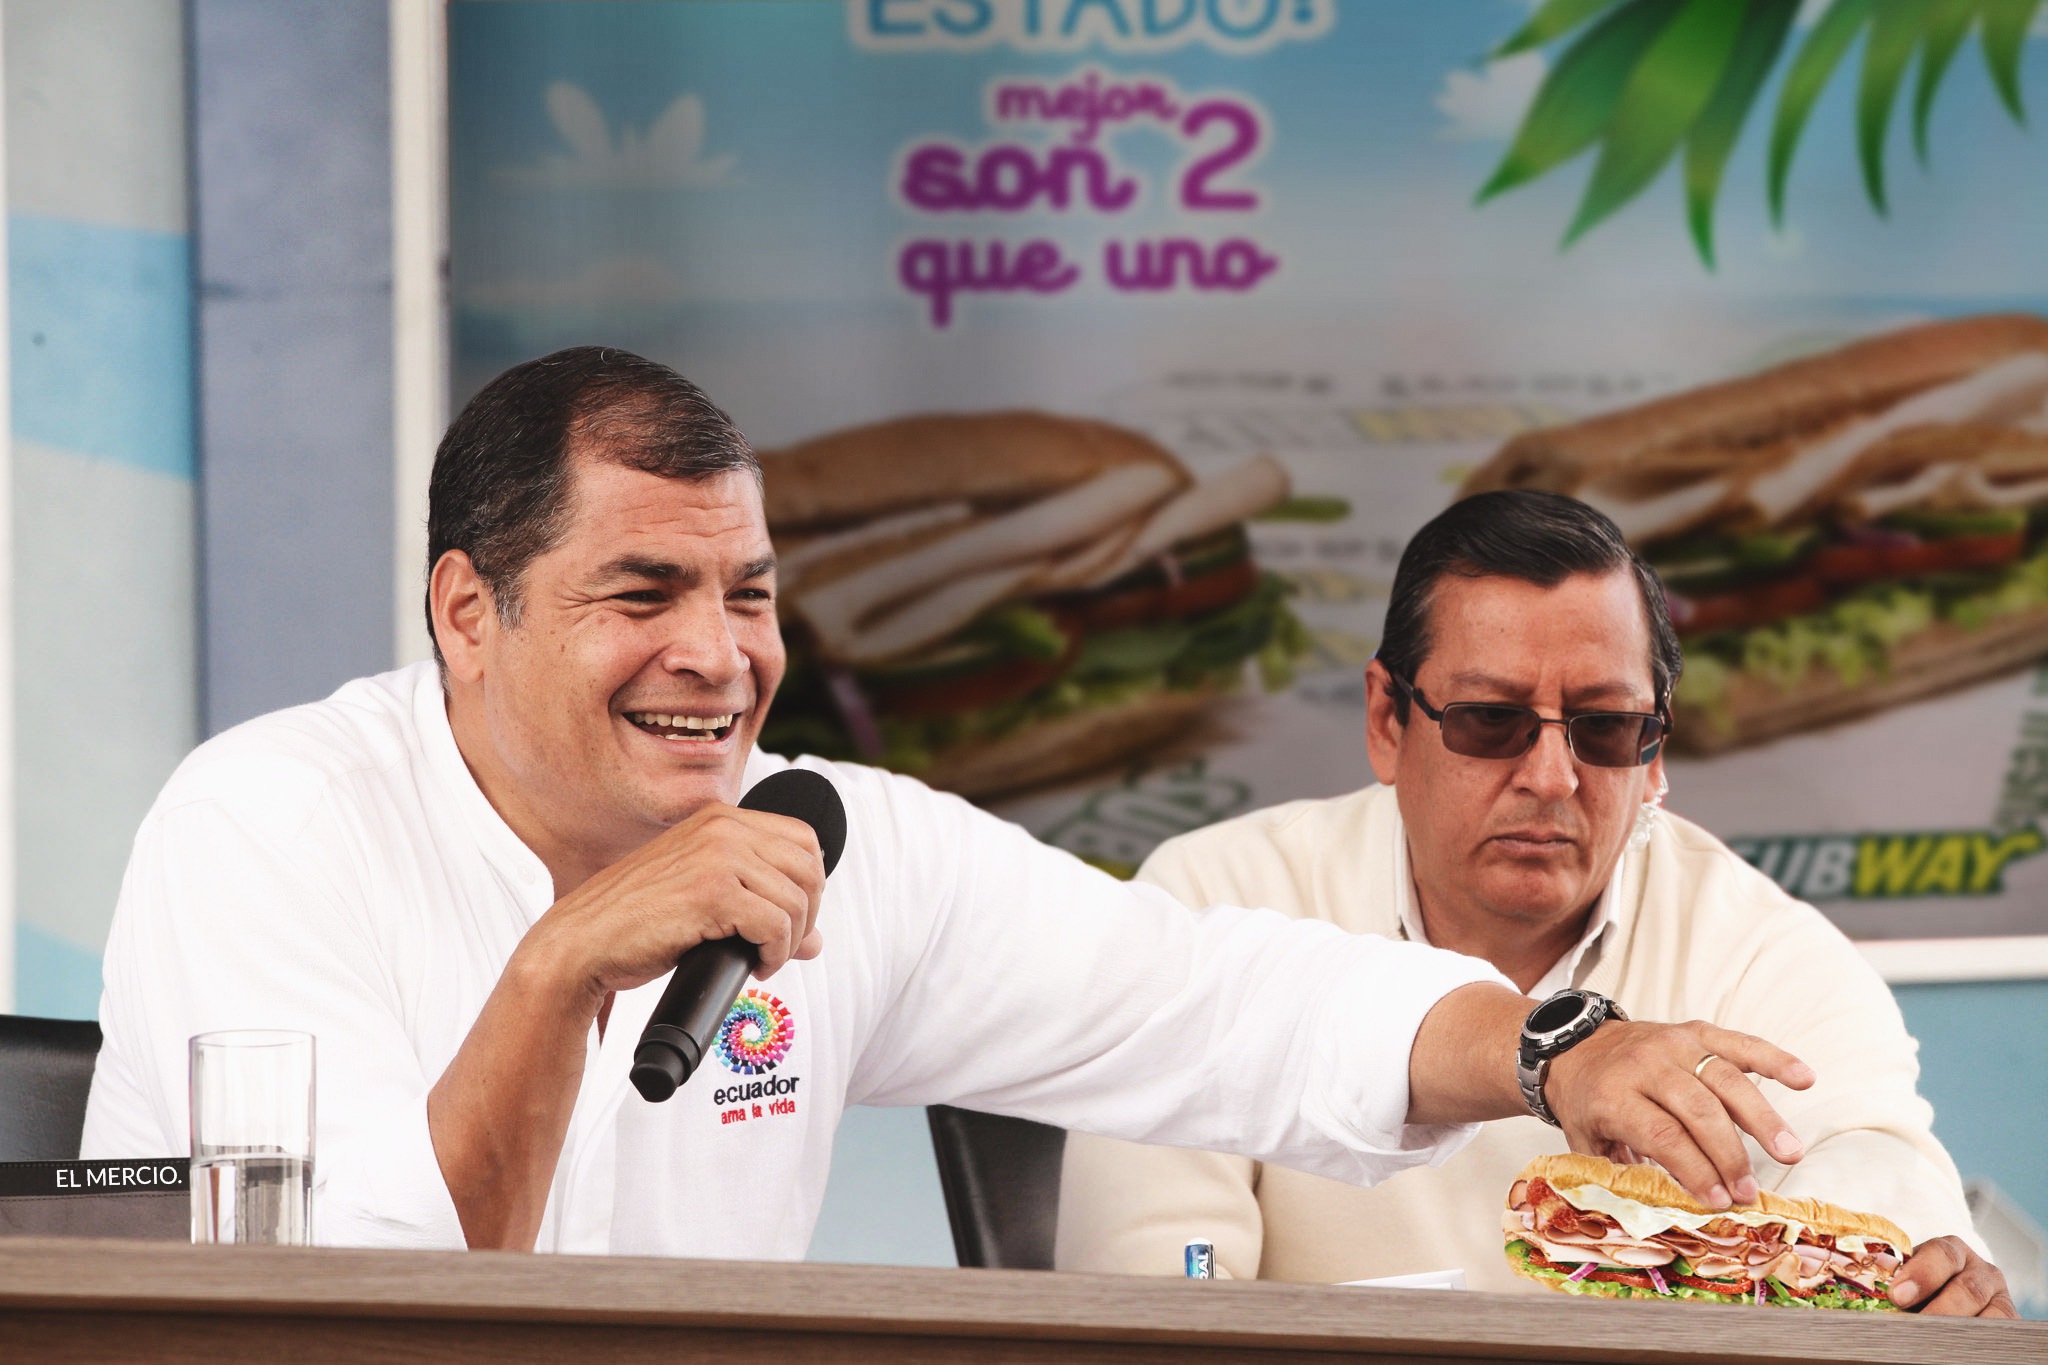 Subway auspiciará el programa Enlace Ciudadano de Rafael Correa.